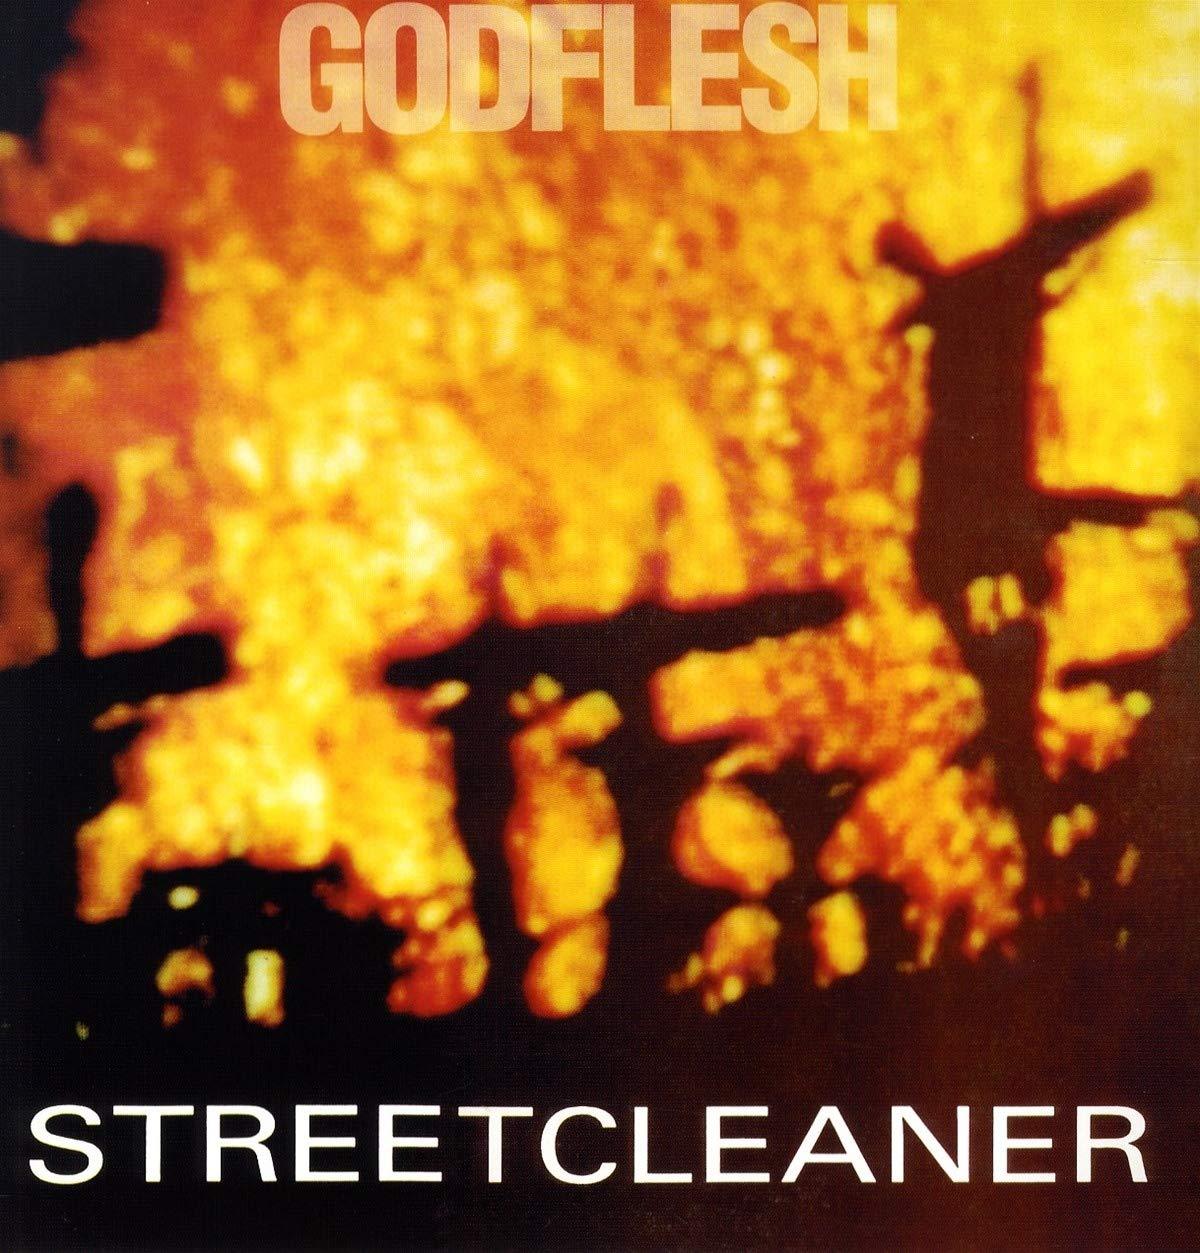 Godflesh "Streetcleaner" LP (Import)